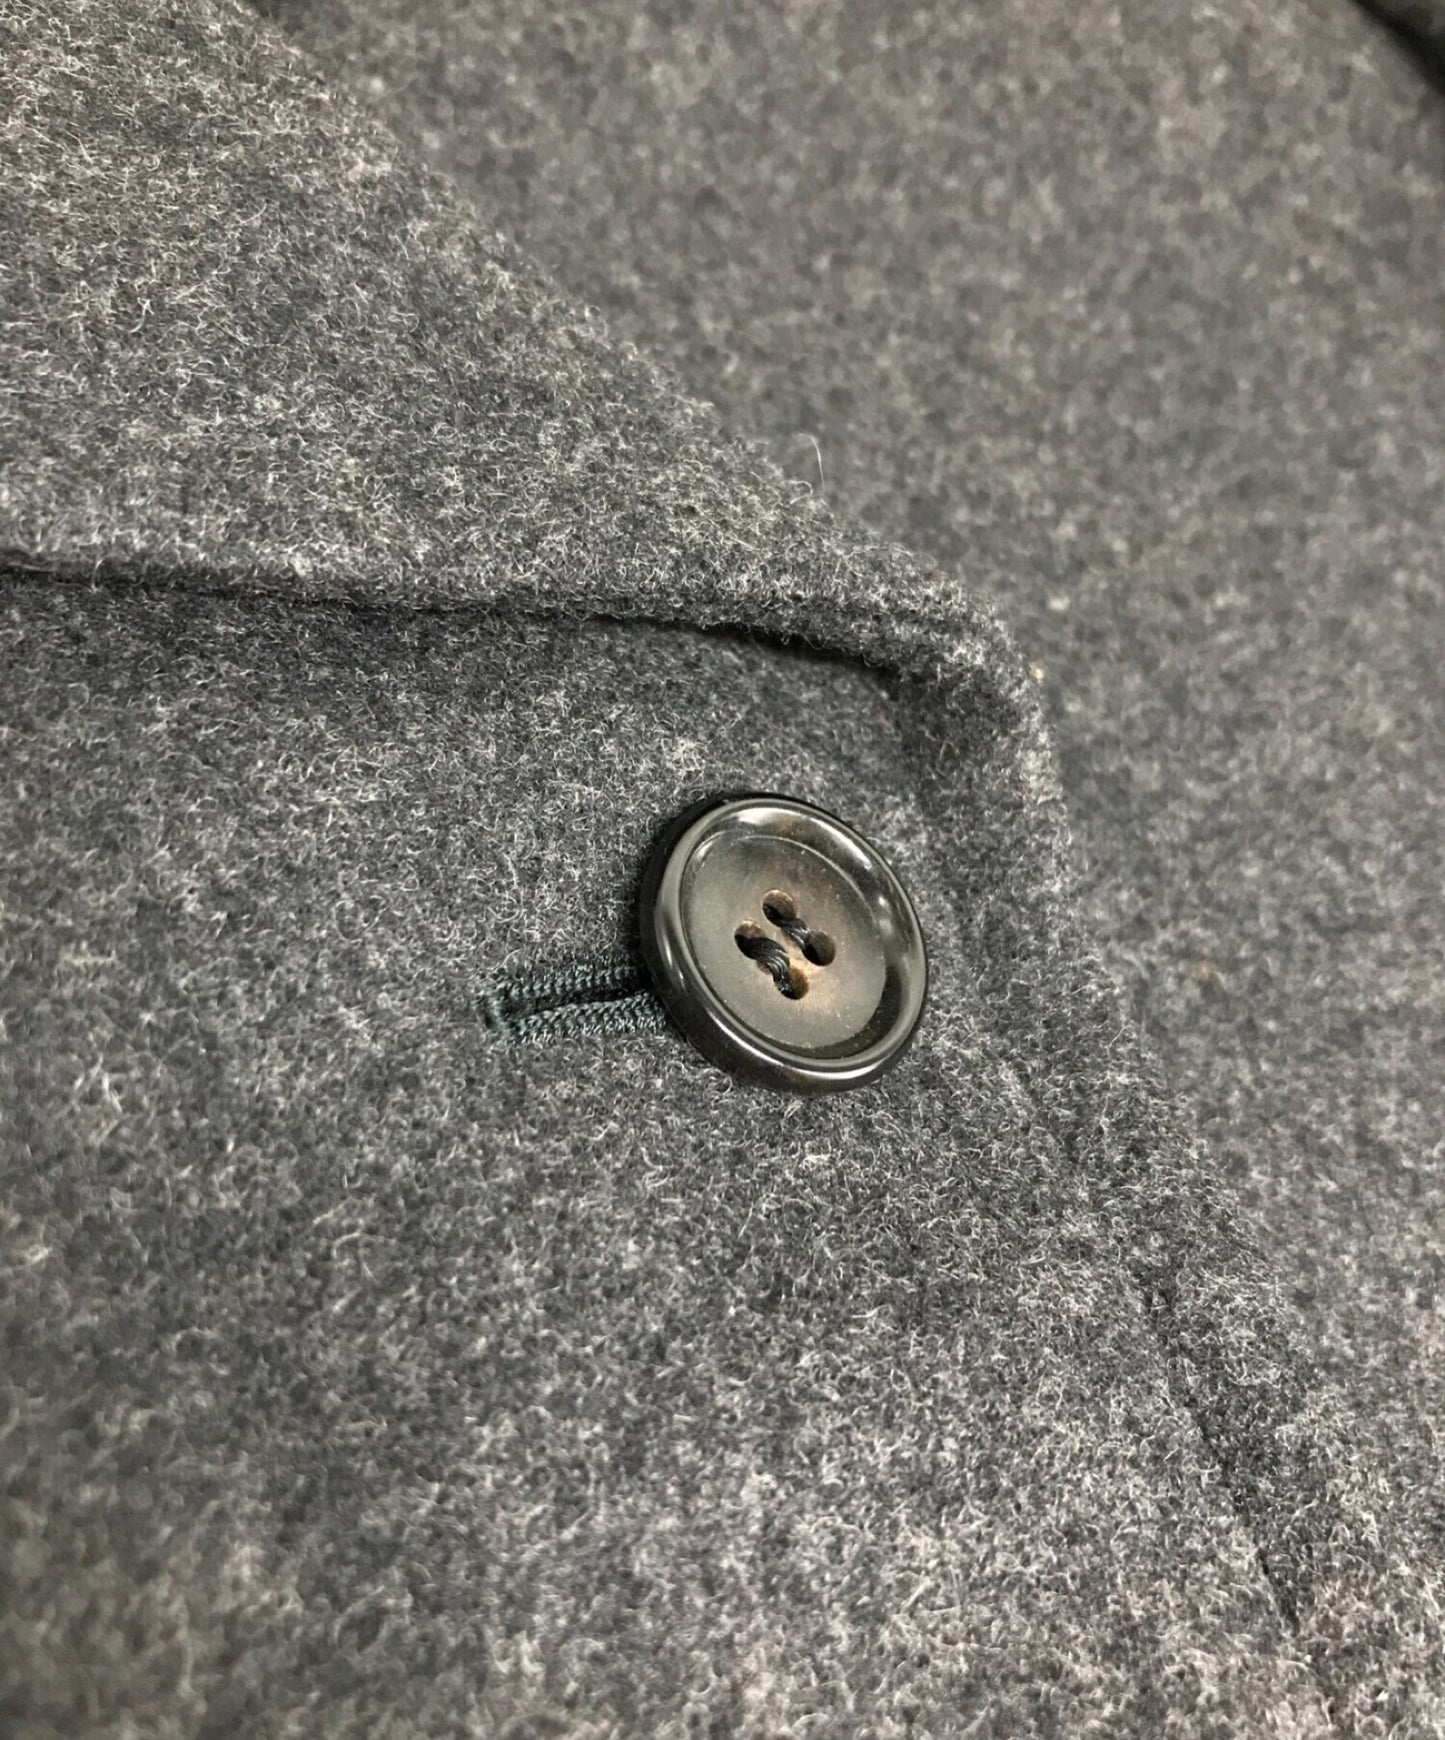 [Pre-owned] tricot COMME des GARCONS old p coat TJ-040180